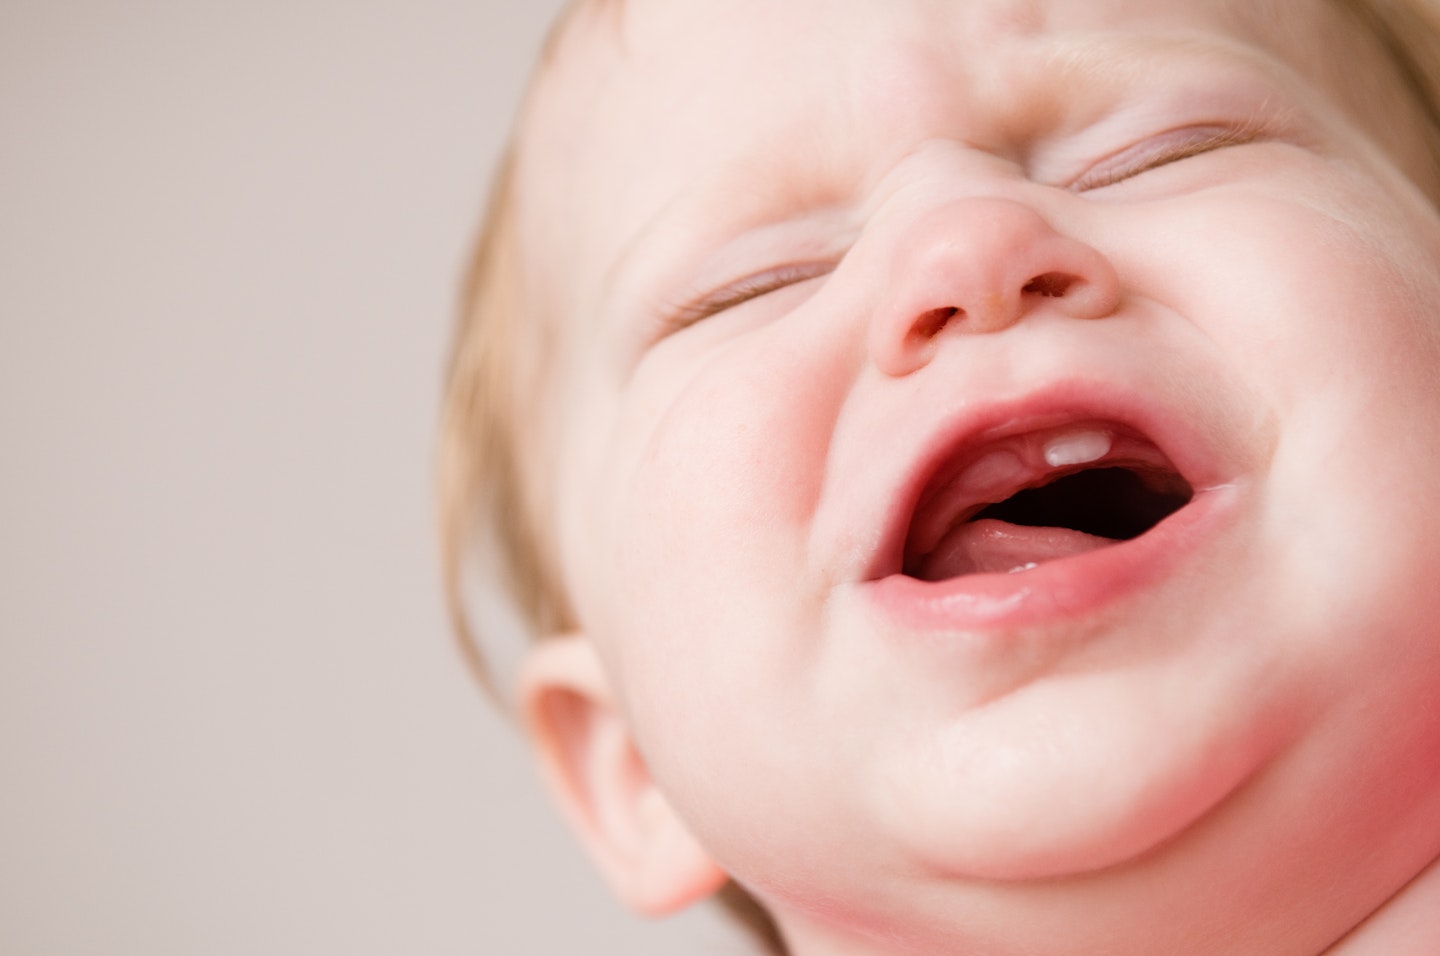 baby teething experiencing discomfort